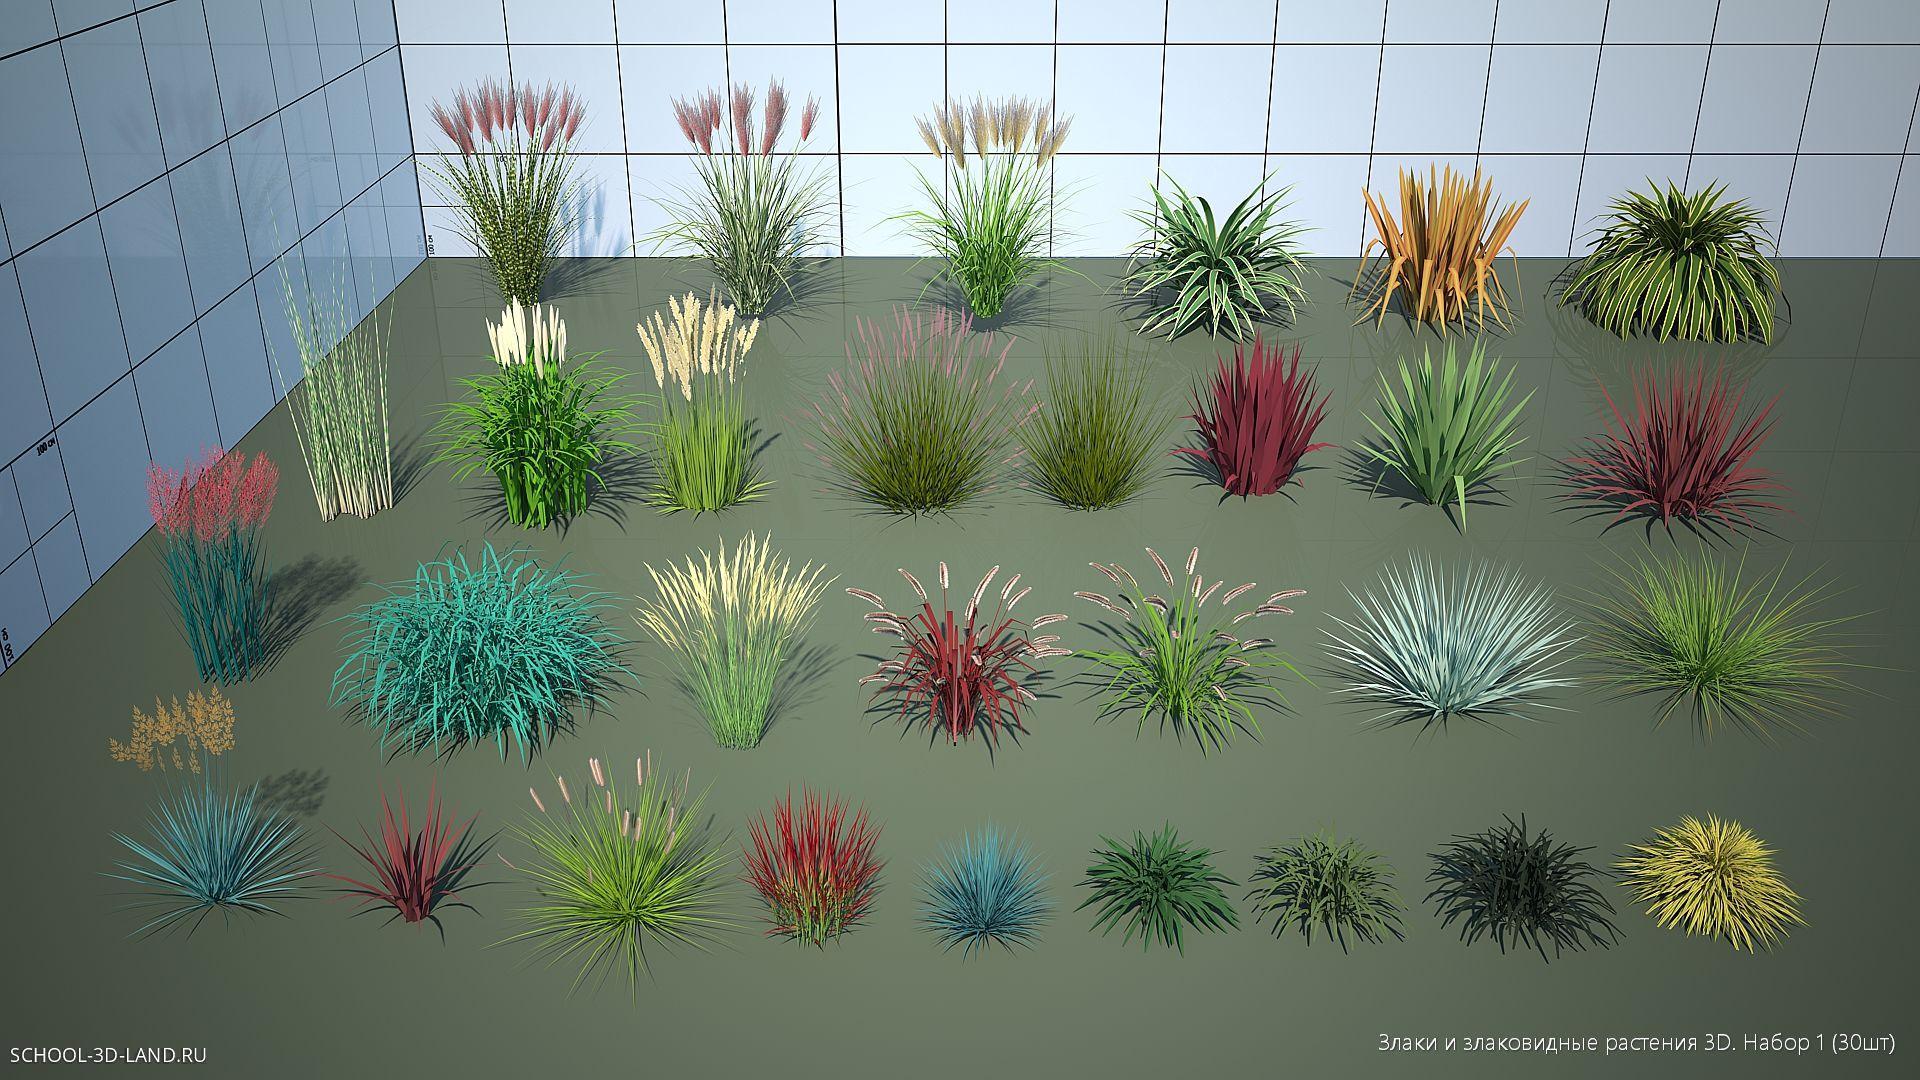 Злаки и злаковидные растения 3D. Набор 1 (30шт)